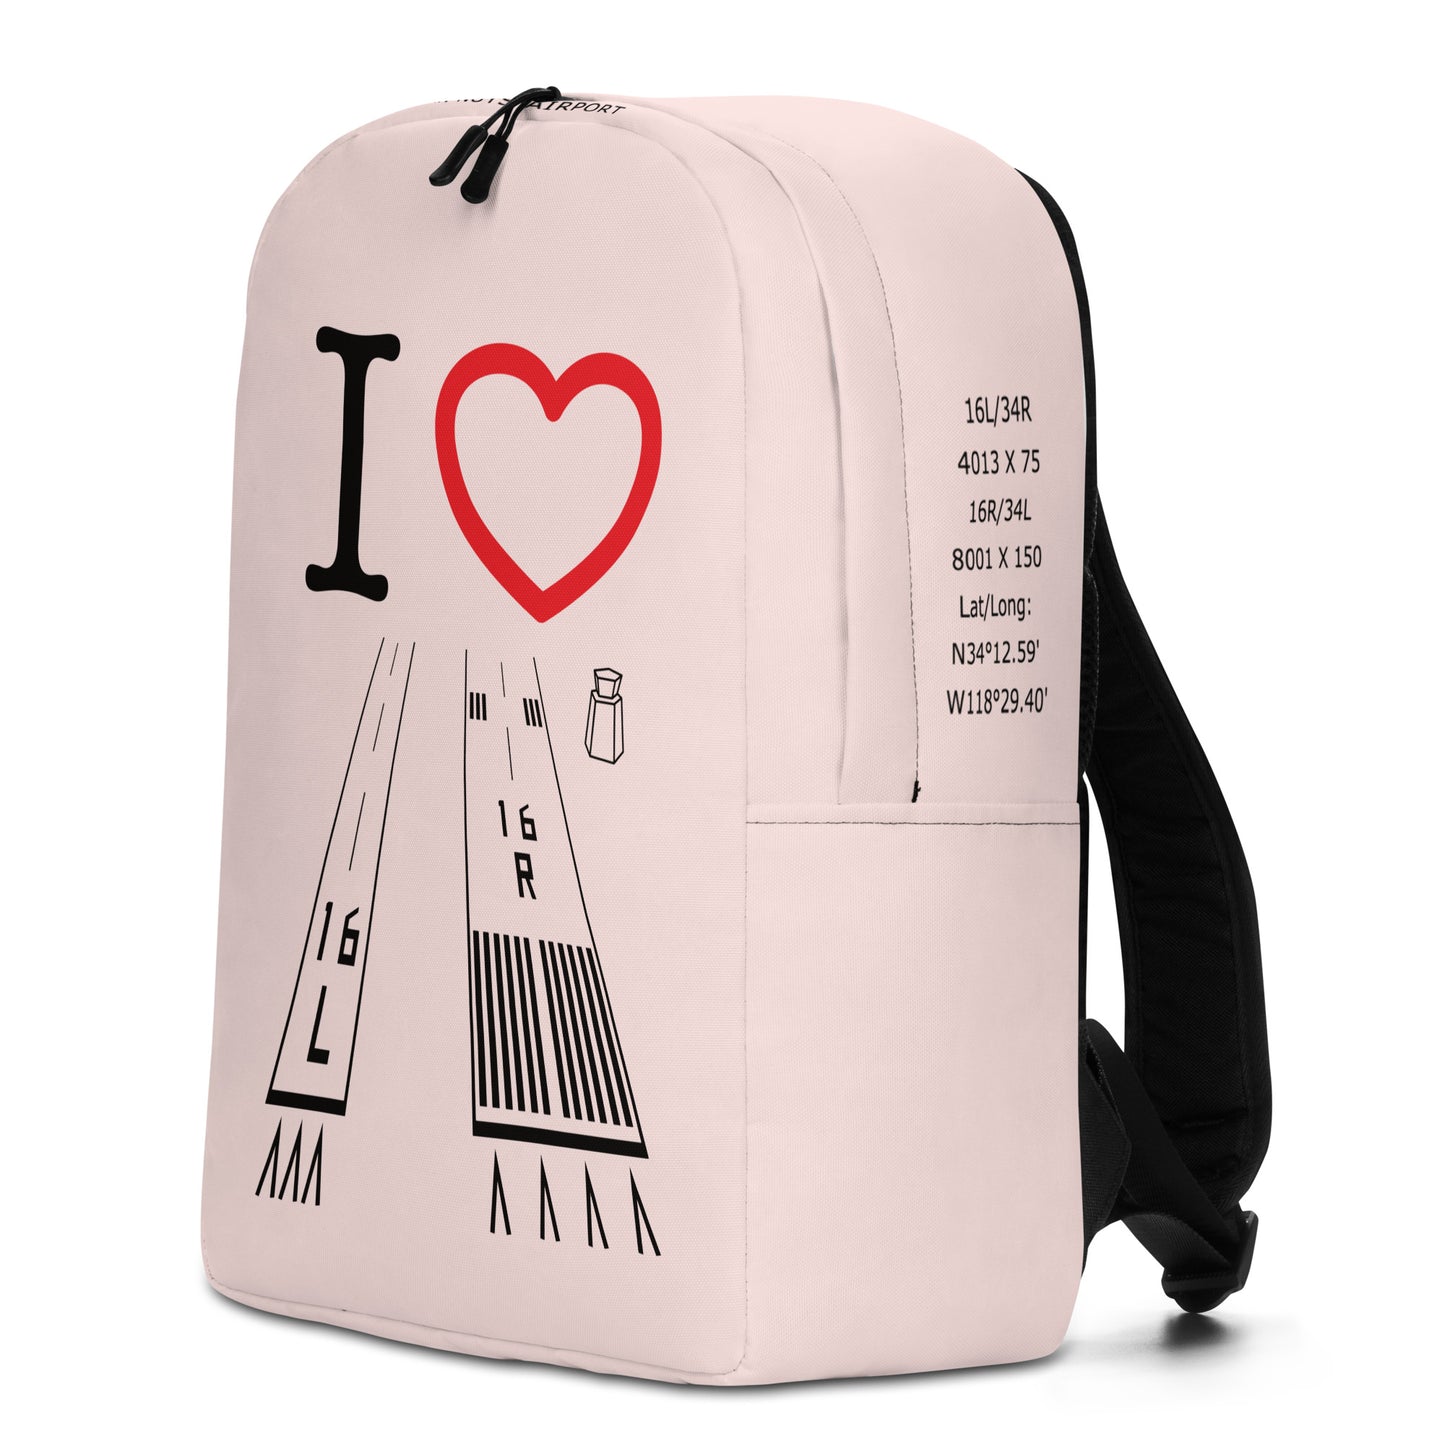 Van Nuys Airport Runways 16L / 16R - light pink minimalist backpack